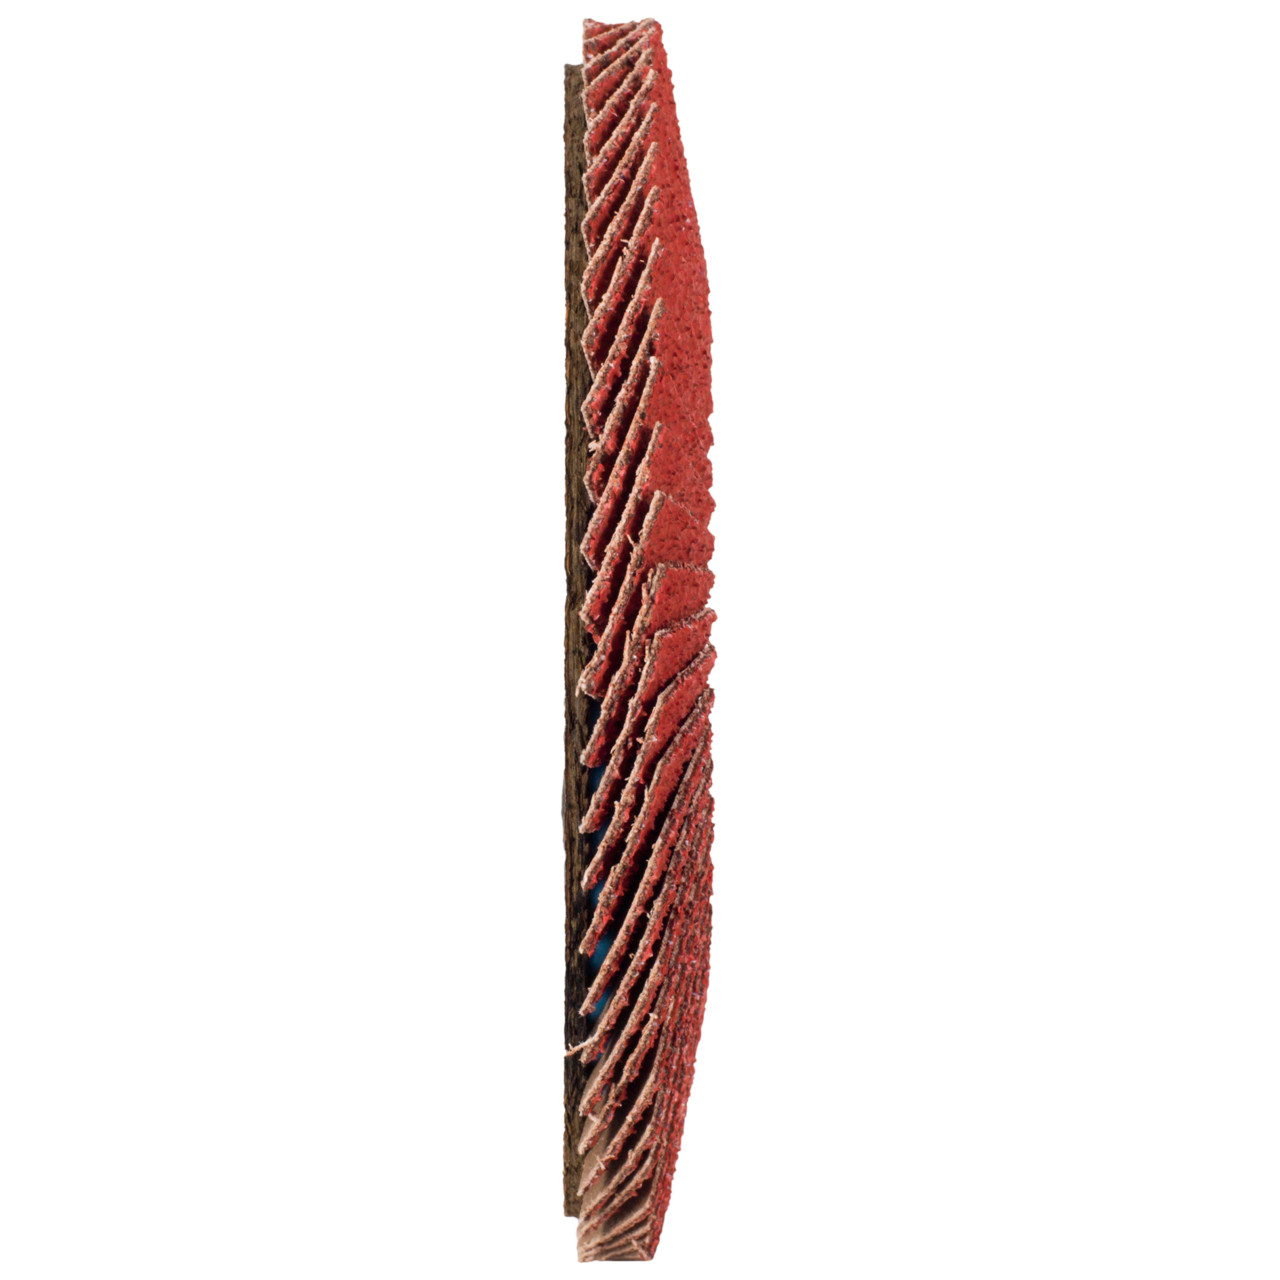 Tyrolit Gekartelde borgring DxH 125x22,23 CERABOND gekartelde borgring voor roestvrij staal, P80, vorm: 28A - rechte versie (glasvezeldragerhuisversie), Art. 34166177